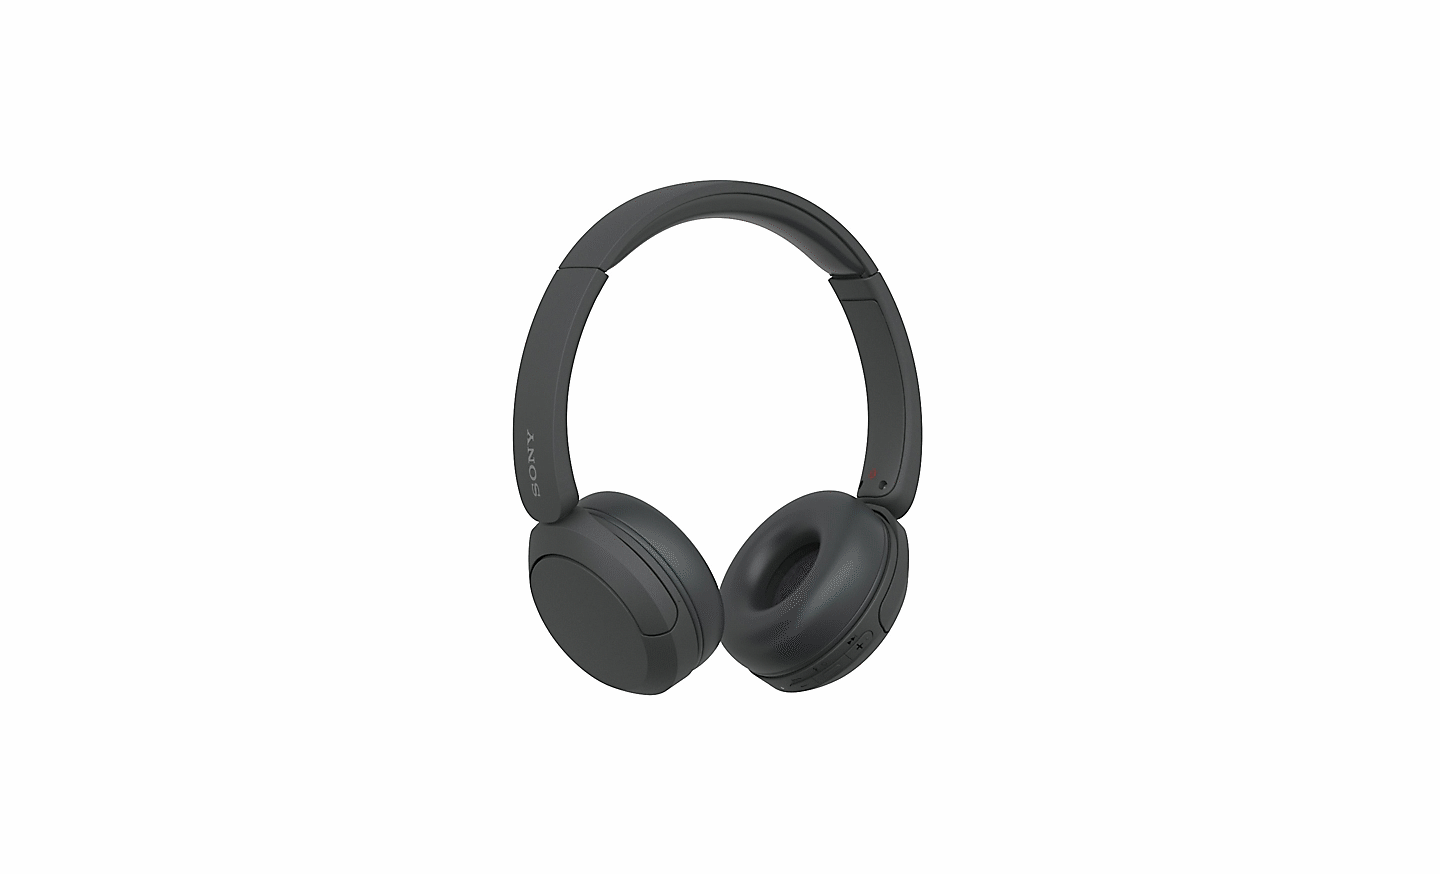 Afbeelding van de zwarte koptelefoon WH-CH520 van Sony tegen een witte achtergrond